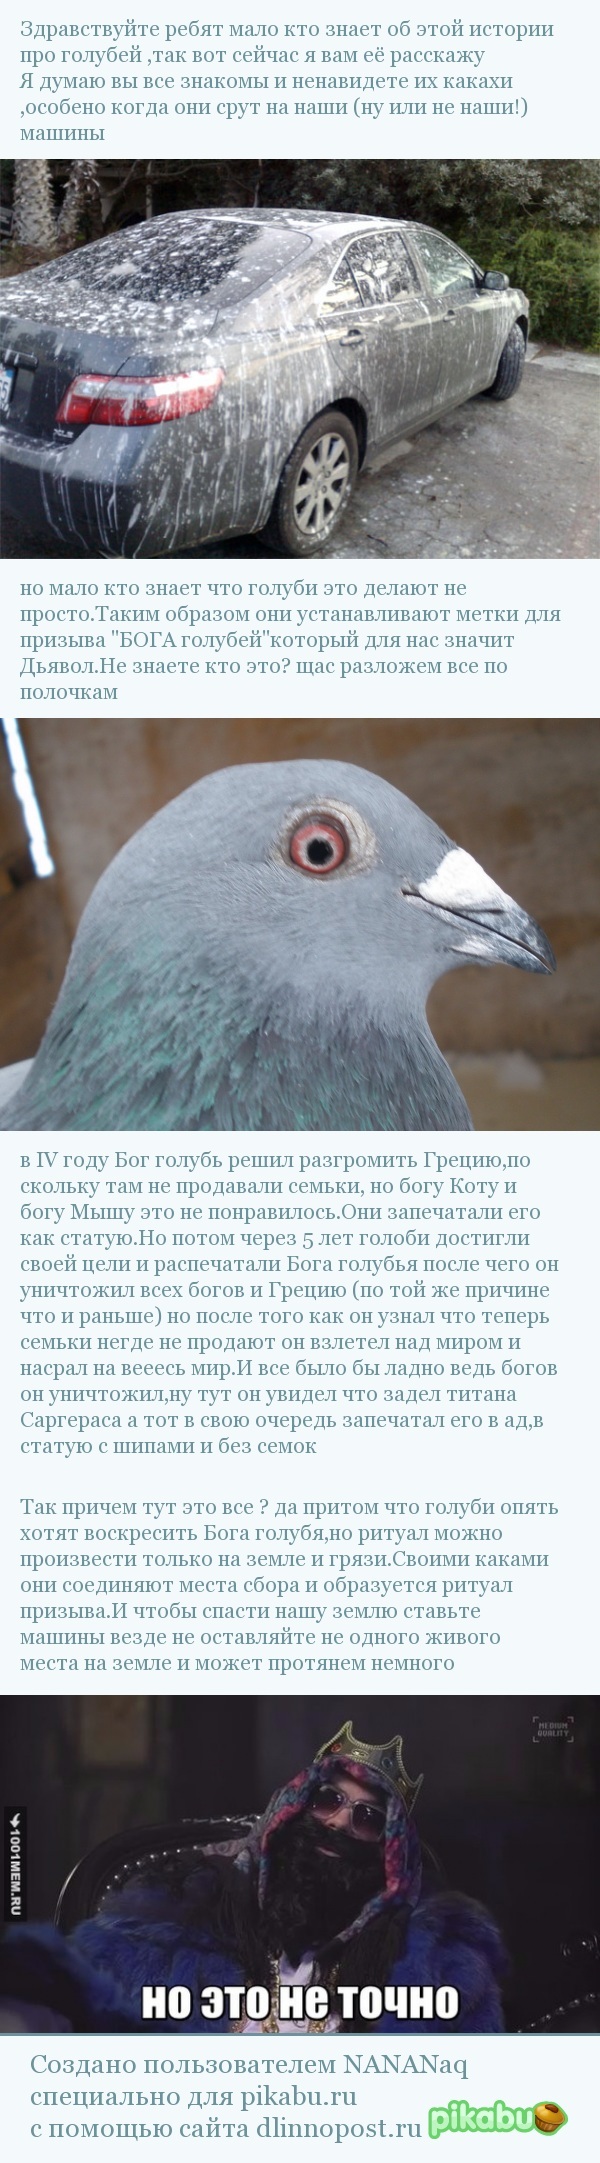 Какие болезни существуют у голубей?